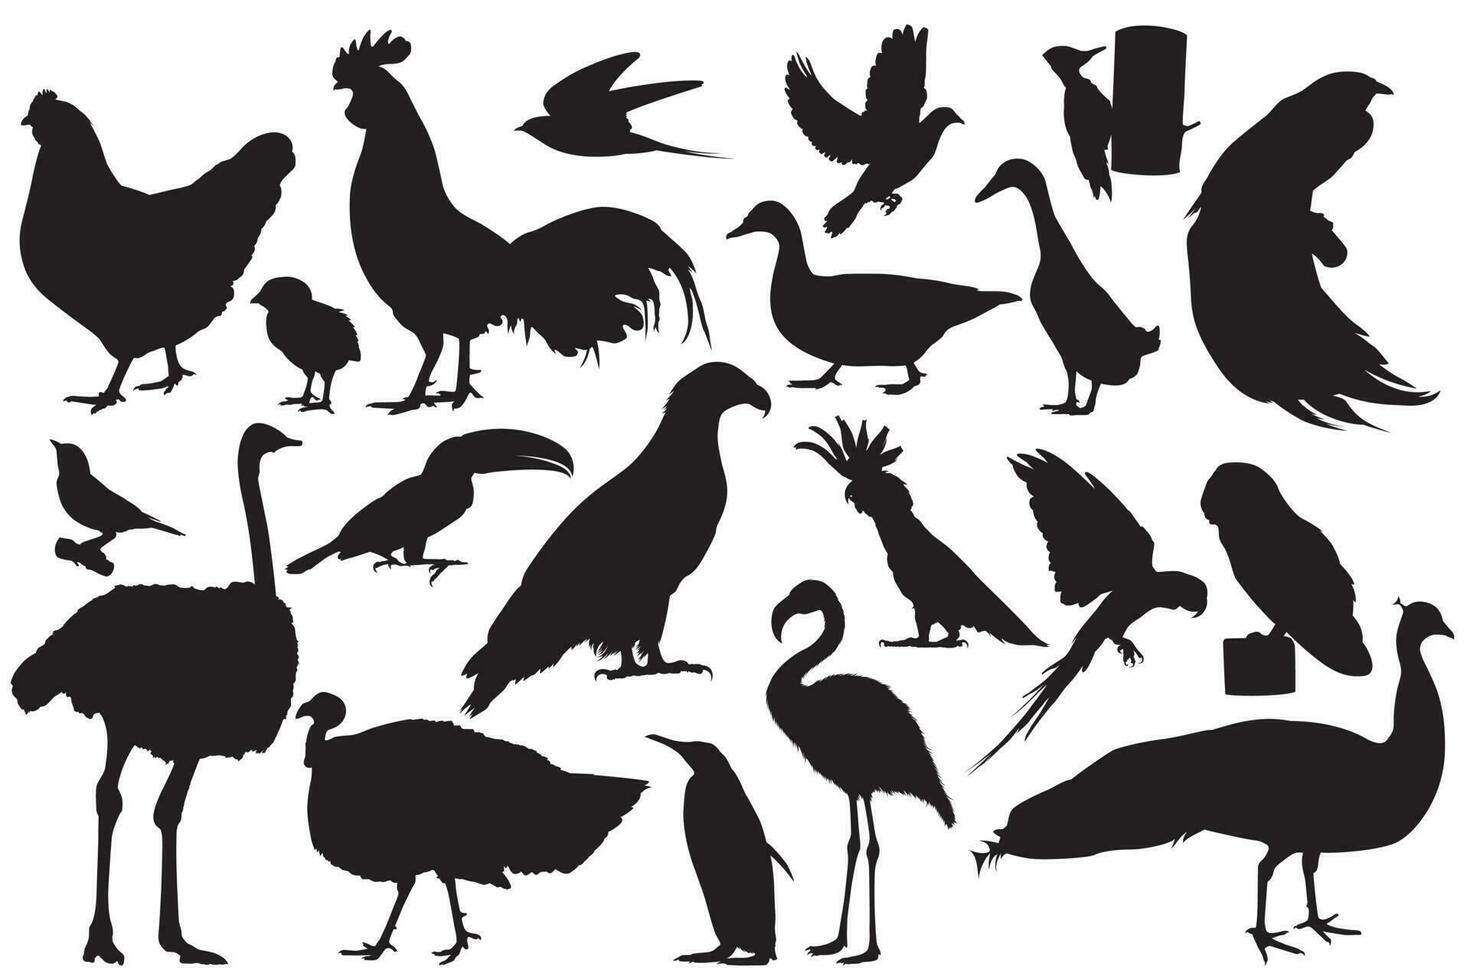 en djur- samling av silhuetter av fåglar och fåglar vektor